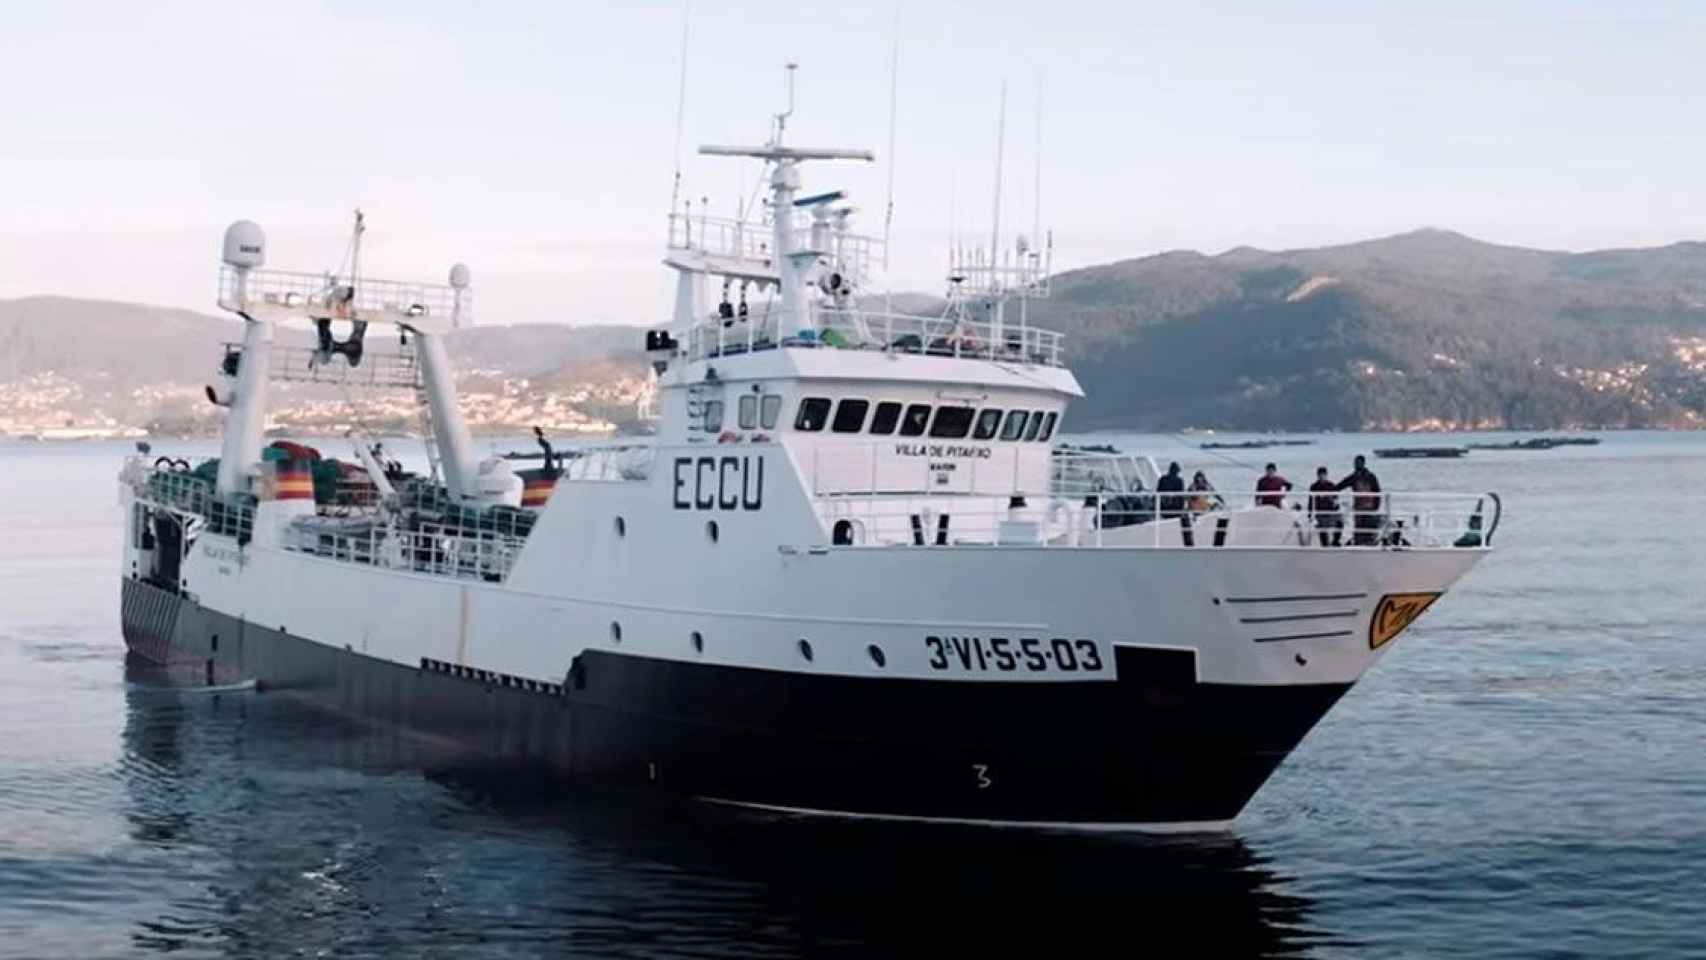 El barco pesquero gallego Villa de Pitanxo del trágico naufragio en aguas de Terranova (Canadá) / Grupo Nores (EFE)